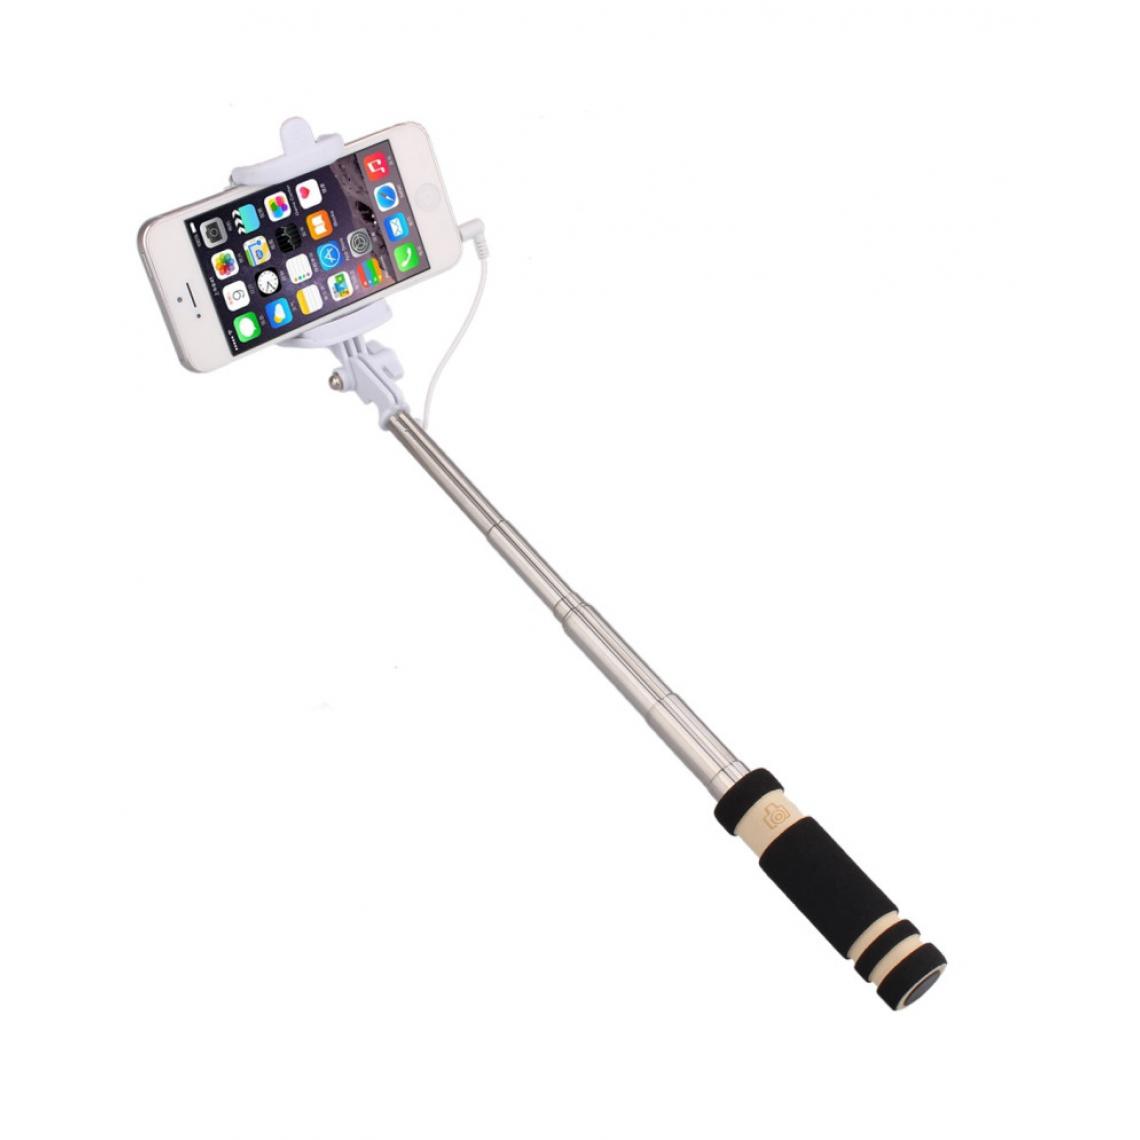 Shot - Mini Perche Selfie pour XIAOMI Mi 9T Smartphone avec Cable Jack Selfie Stick Android IOS Reglable Bouton Photo (NOIR) - Autres accessoires smartphone